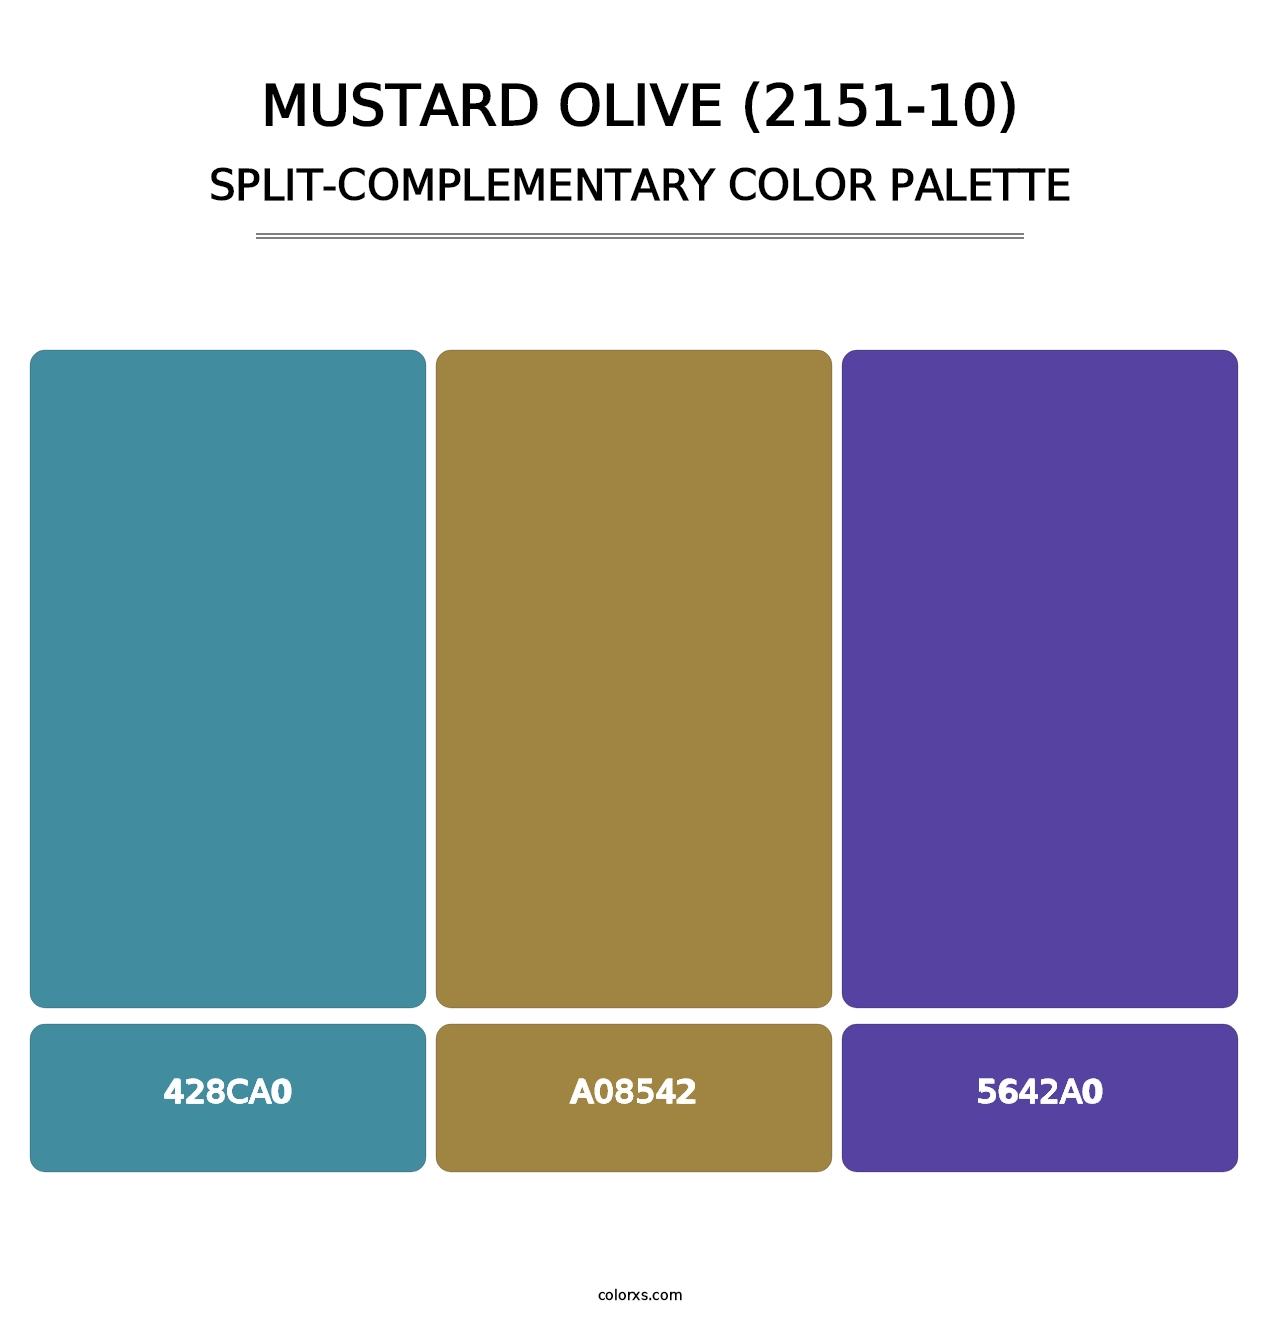 Mustard Olive (2151-10) - Split-Complementary Color Palette